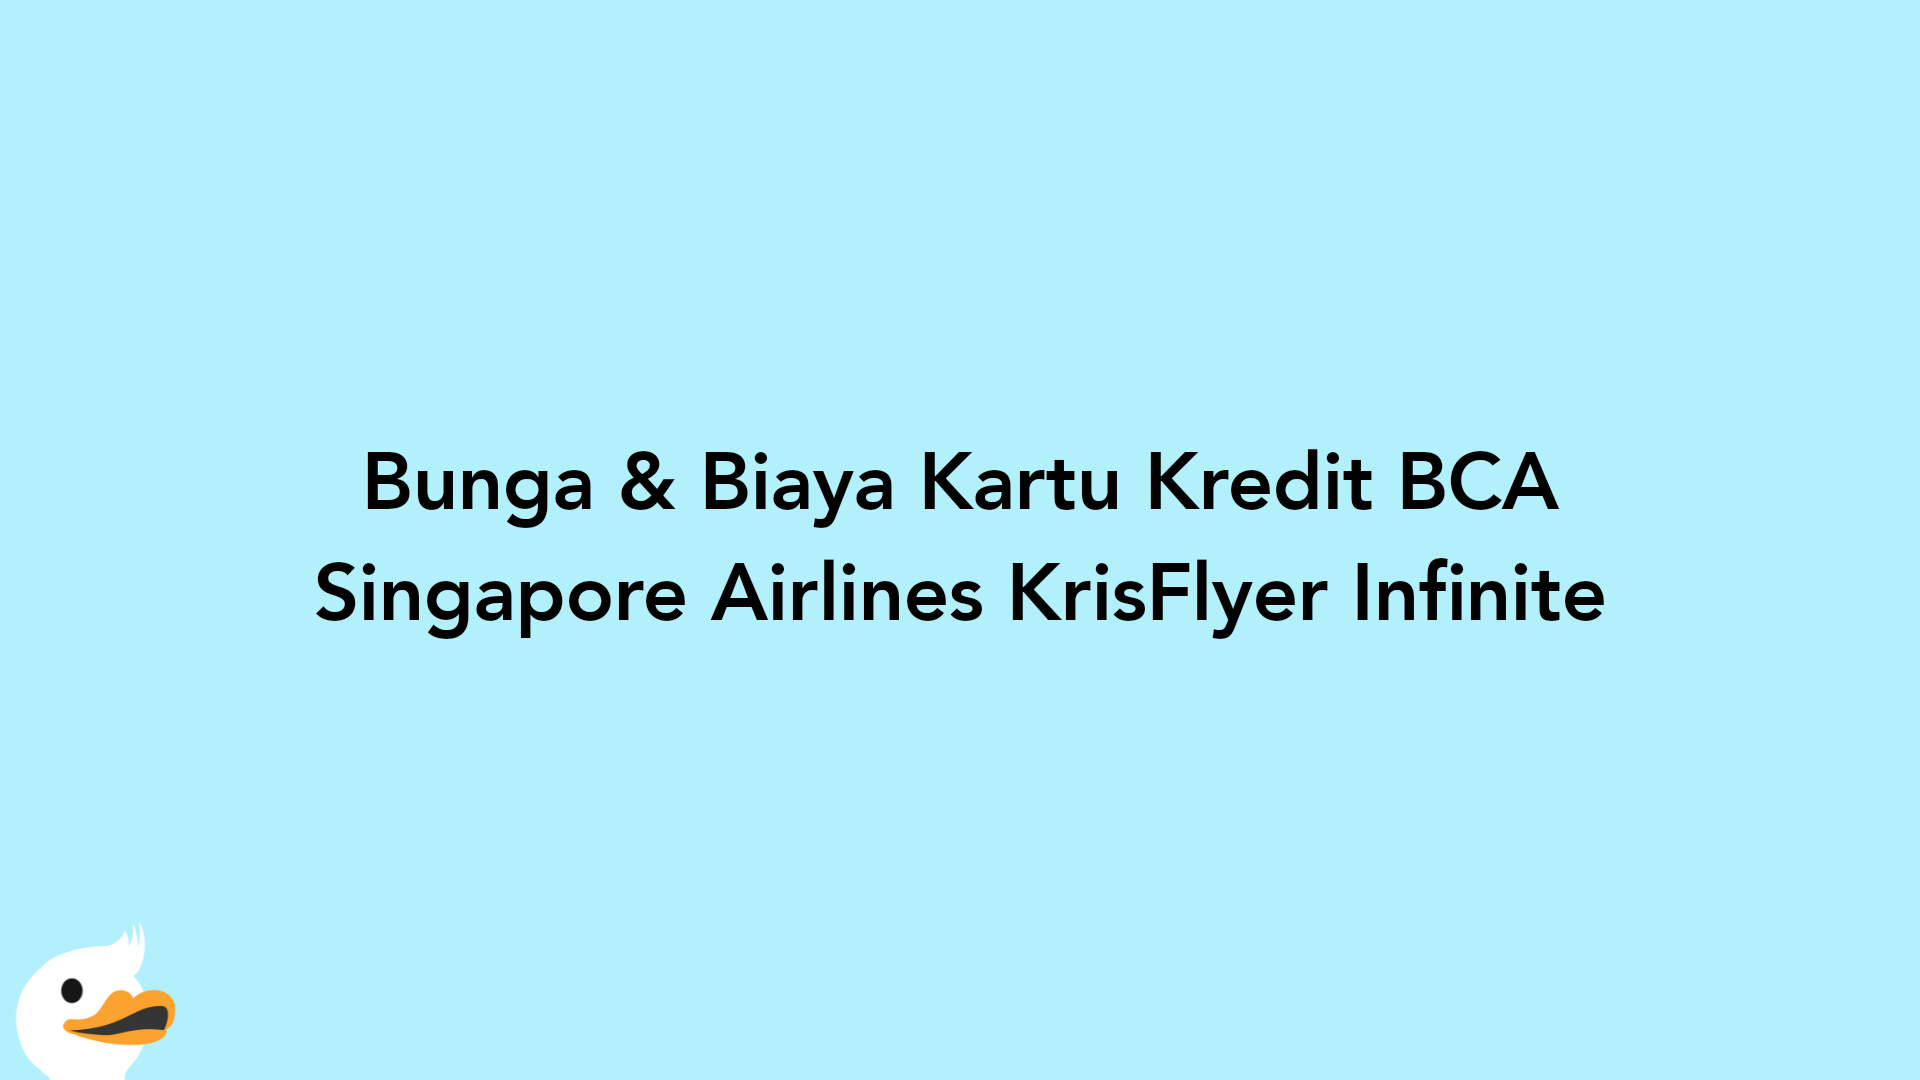 Bunga & Biaya Kartu Kredit BCA Singapore Airlines KrisFlyer Infinite